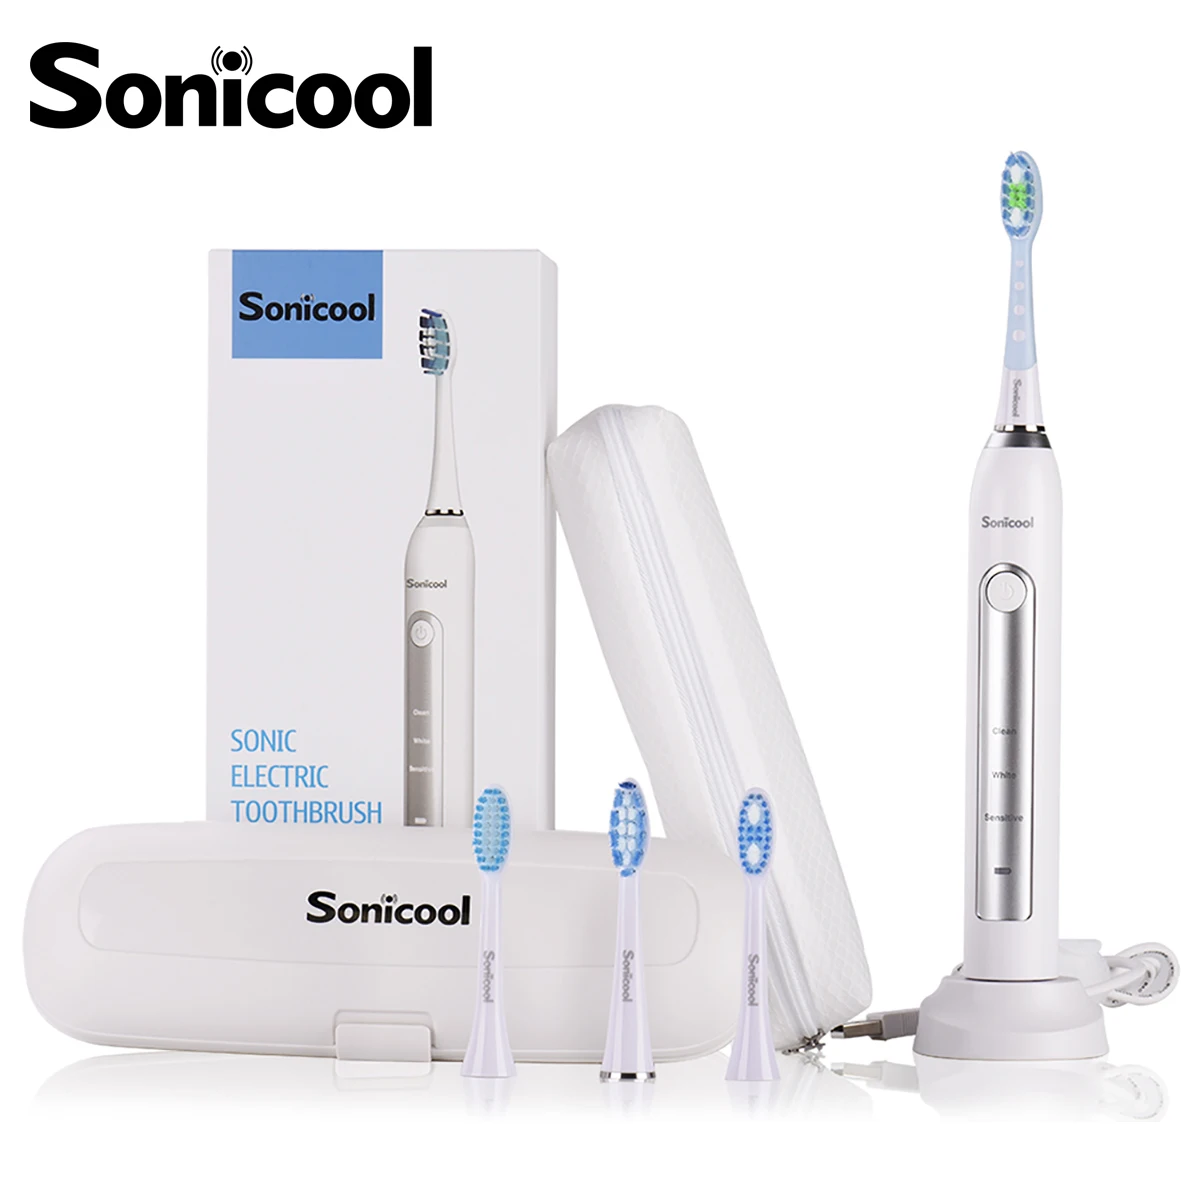 Sonic ool 051B ультра звуковая электрическая зубная щетка USB перезаряжаемая 31000 об/мин звуковая электрическая зубная щетка Водонепроницаемая версия ЕС/США